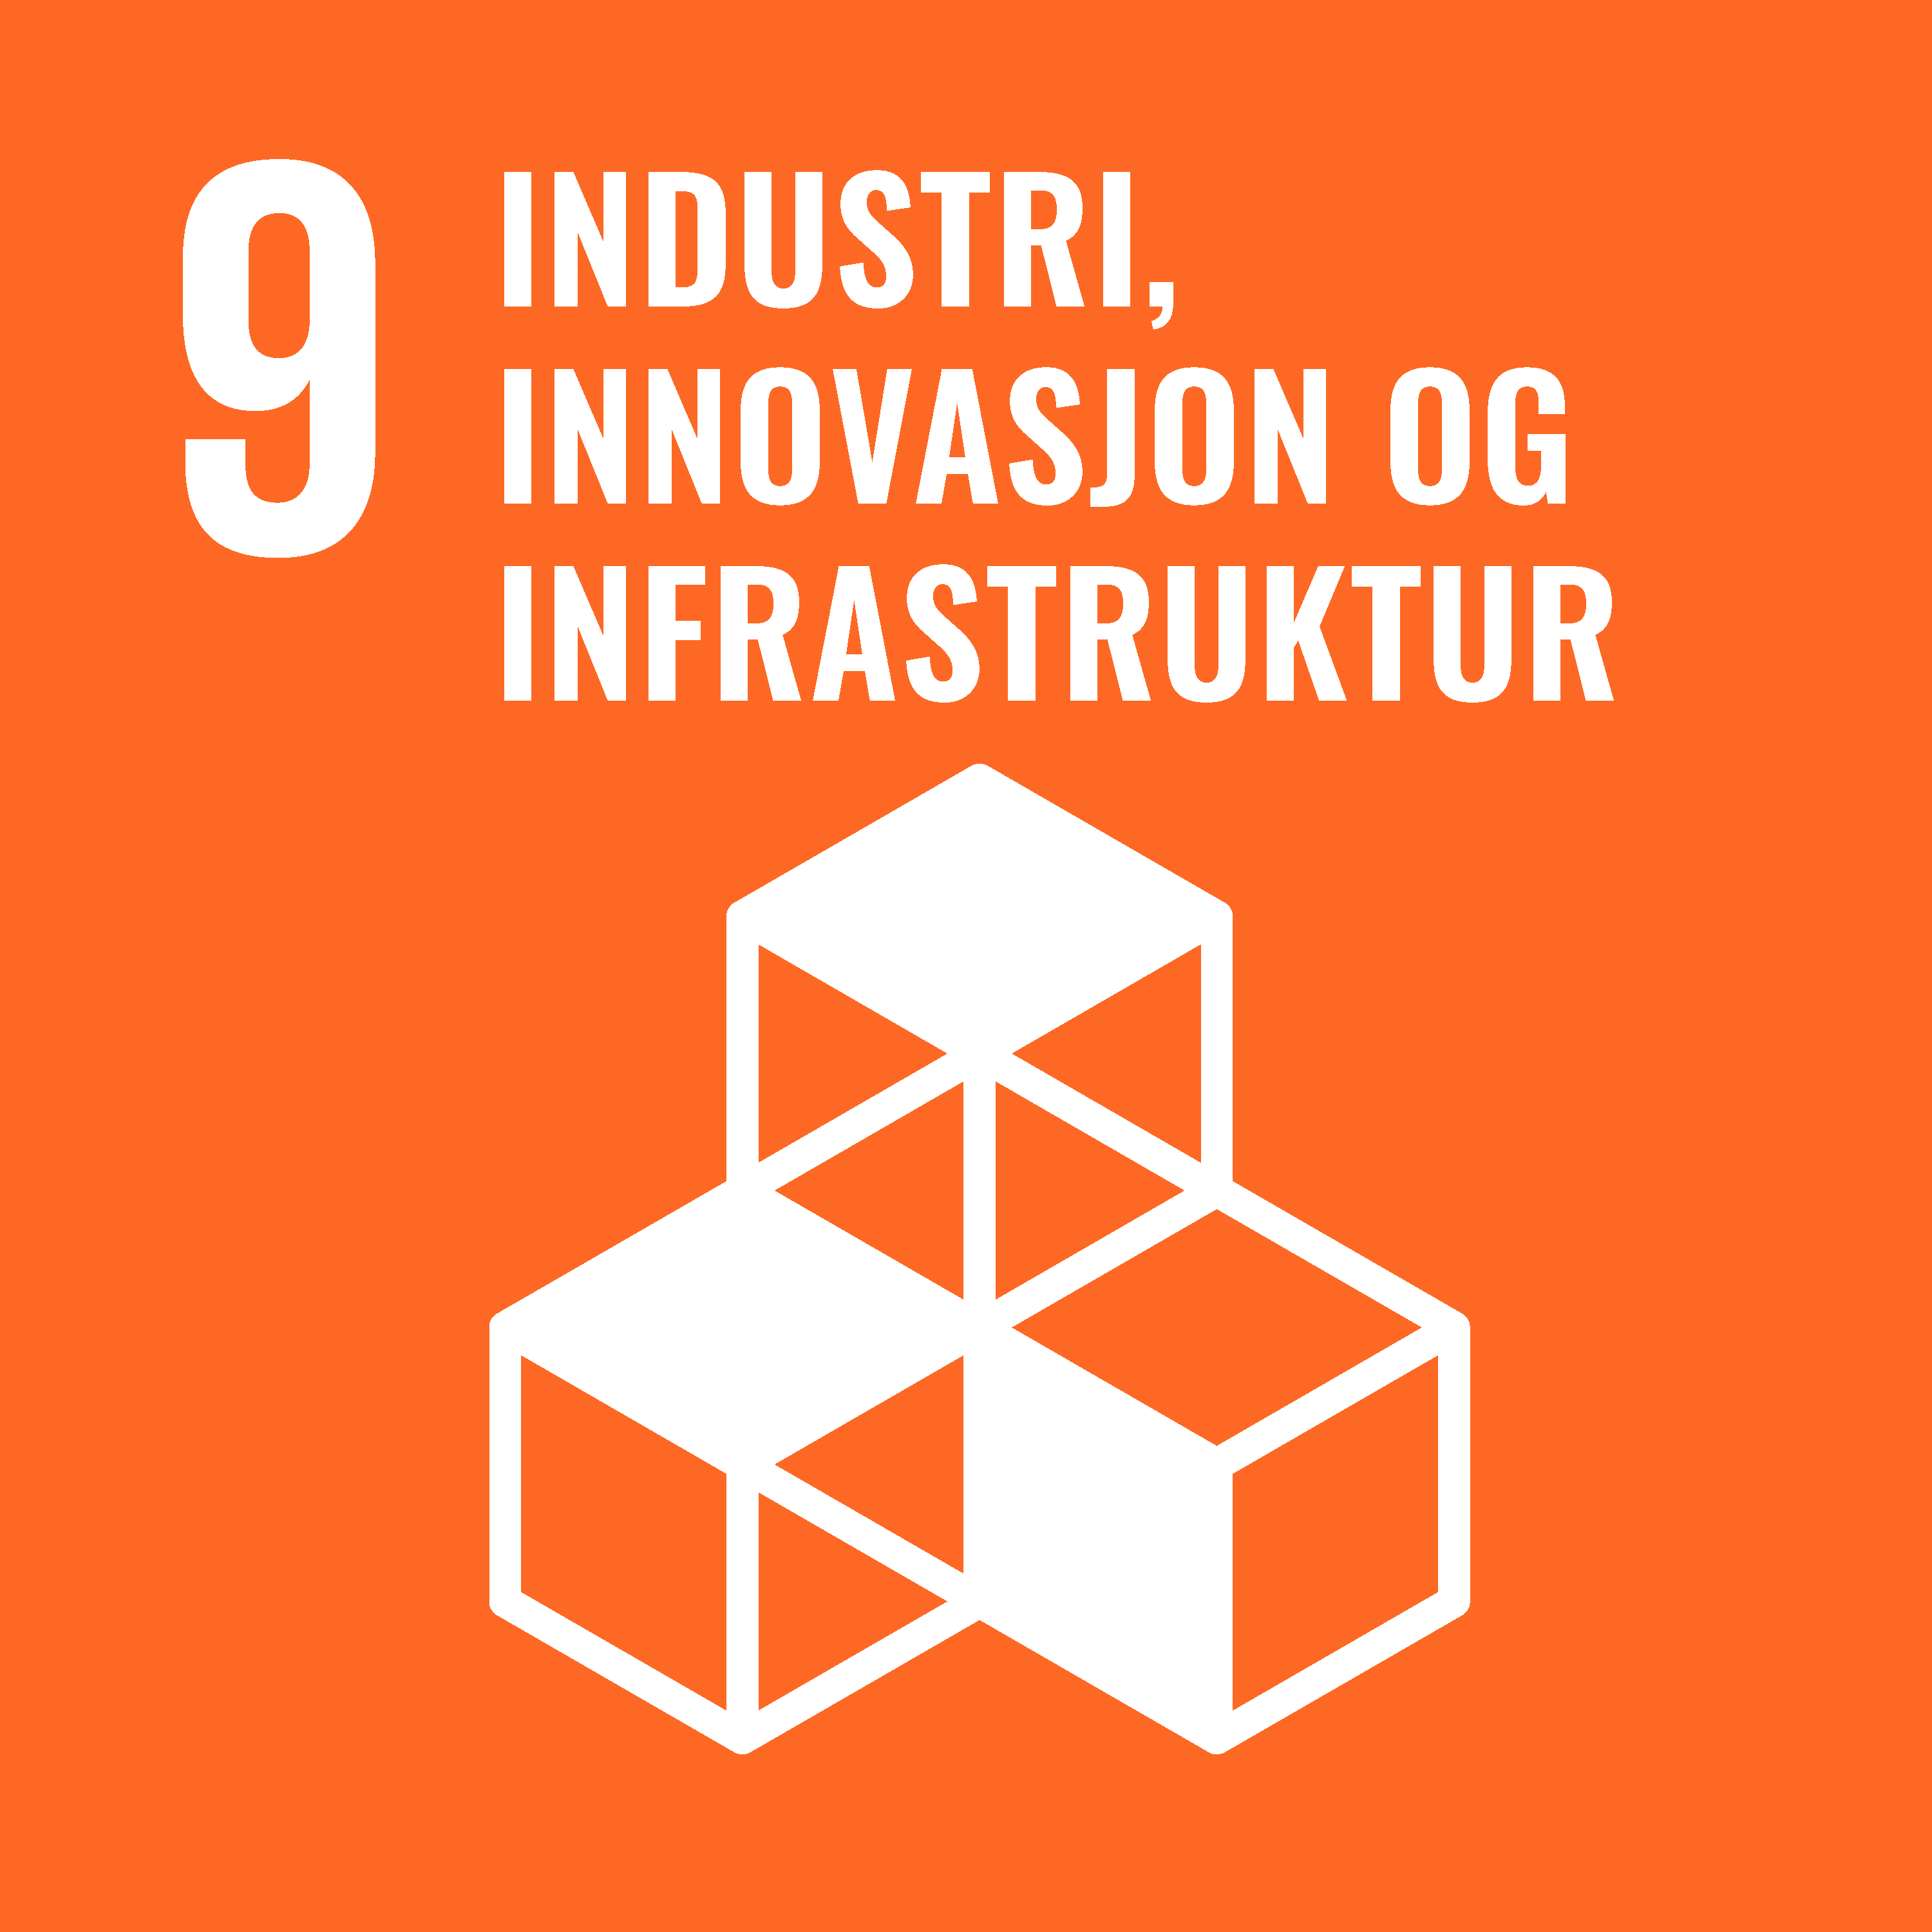 Go to https://www.fn.no/om-fn/fns-baerekraftsmaal/industri-innovasjon-og-infrastruktur